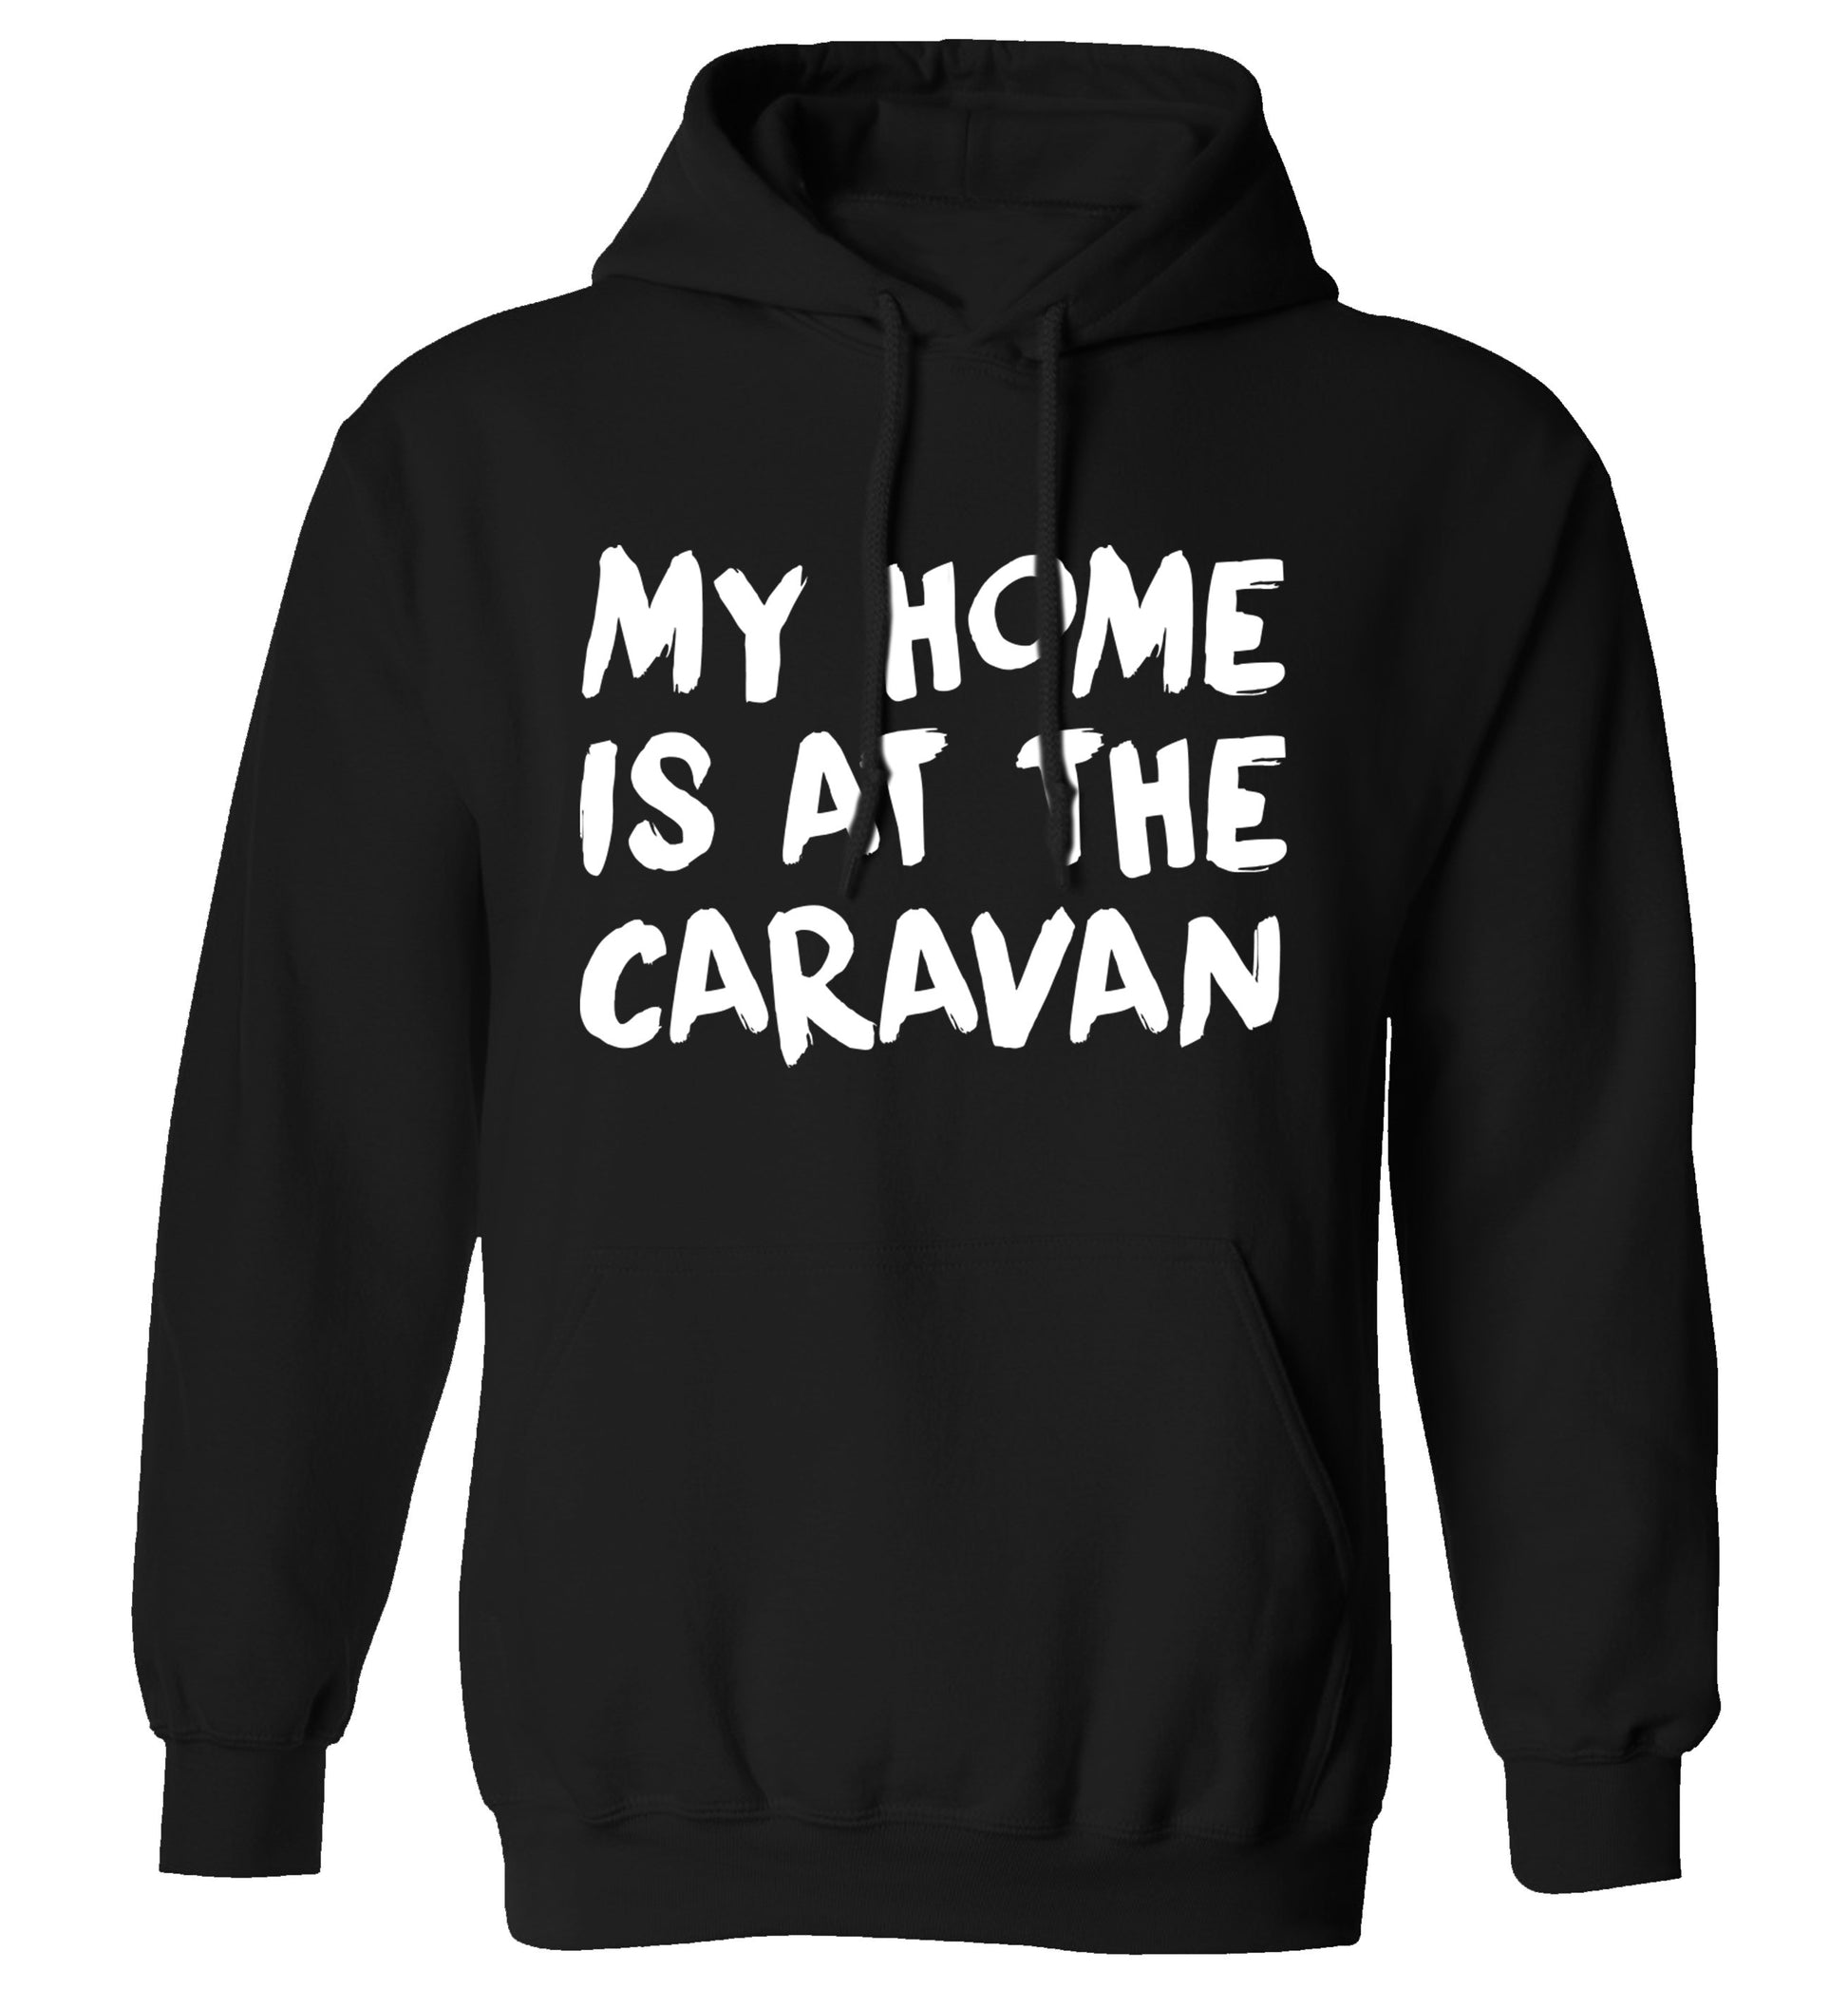 My home is at the caravan adults unisex black hoodie 2XL